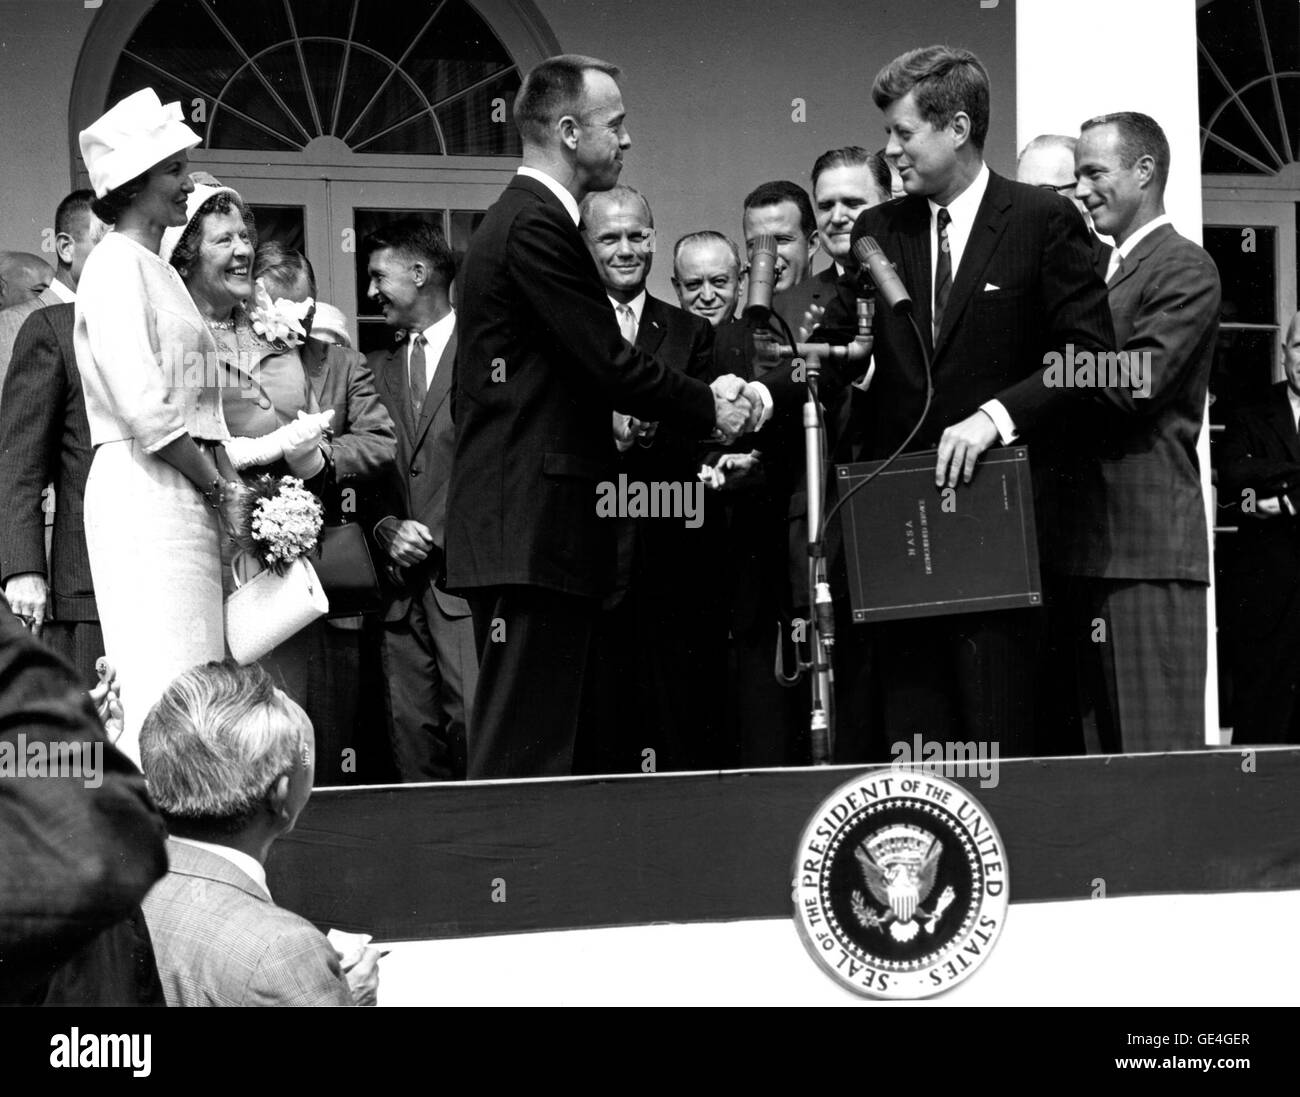 Präsident John F. Kennedy gratuliert Astronaut Alan B. Shepard, Jr., der erste Amerikaner im Weltall, auf seine historischen 5. Mai 1961 Ritt in die Freiheit 7-Sonde und stellt ihn mit der NASA Distinguished Service Medal. Die Zeremonie fand auf dem Rasen des weißen Hauses. Shepards Frau, Louise (links im weißen Kleid und Hut) und seine Mutter waren in Anwesenheit als auch die anderen sechs Mercury-Astronauten und NASA Beamte, einige im Hintergrund sichtbar.                                                              Bild-Nr.: 1961ADM-13 Datum: 8. Mai 1961 Stockfoto